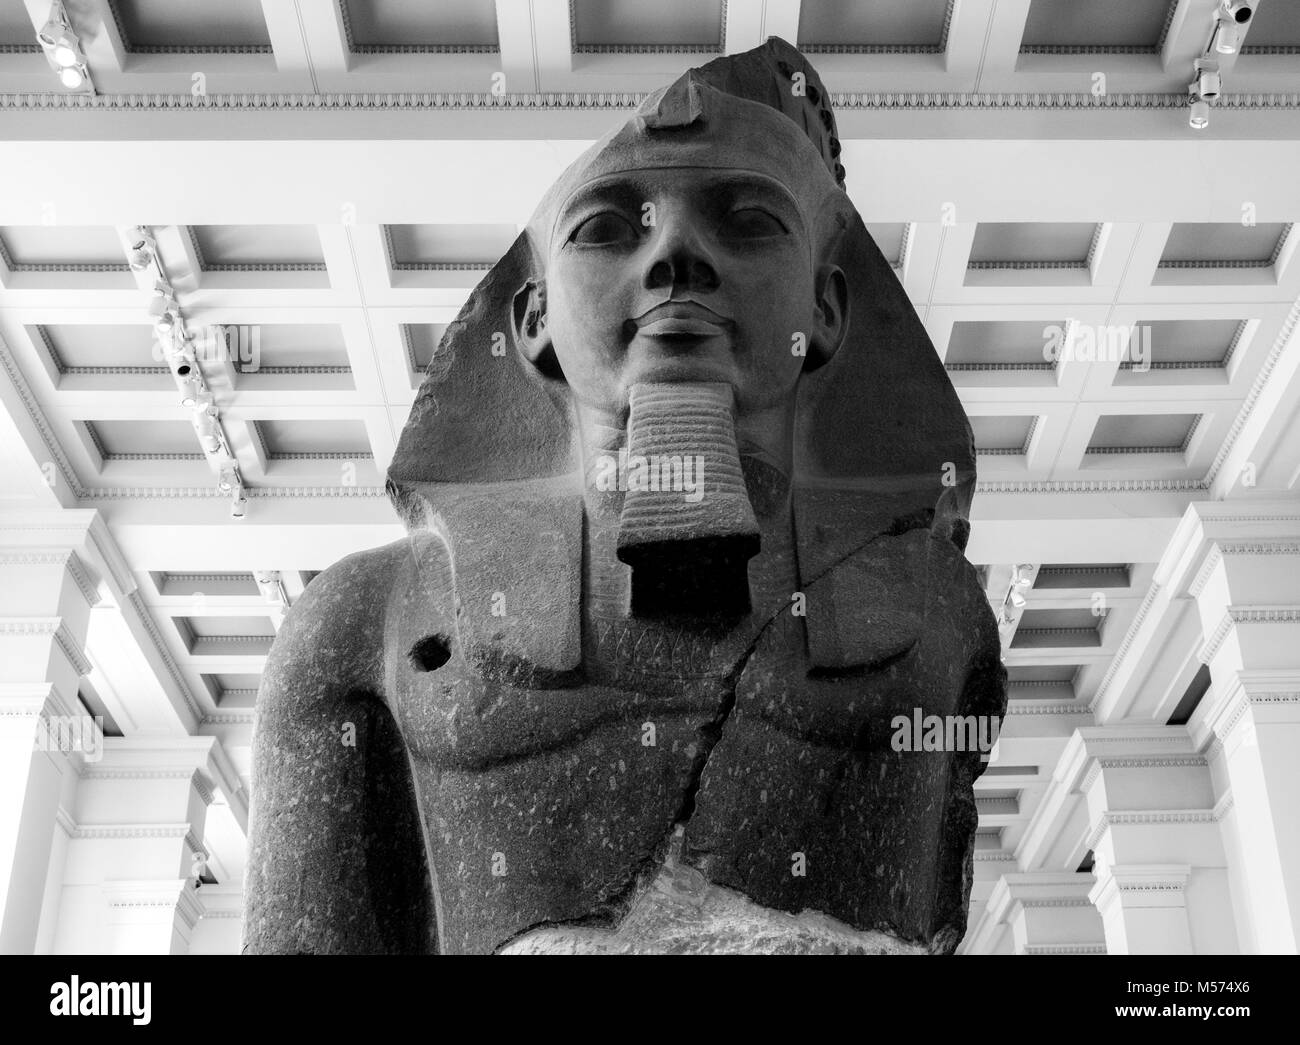 Granit colossal Buste de jeune Memnon Ramsès II au Musée britannique (l'histoire, art et culture). Londres, Angleterre, Royaume-Uni. Image en noir et blanc. Banque D'Images